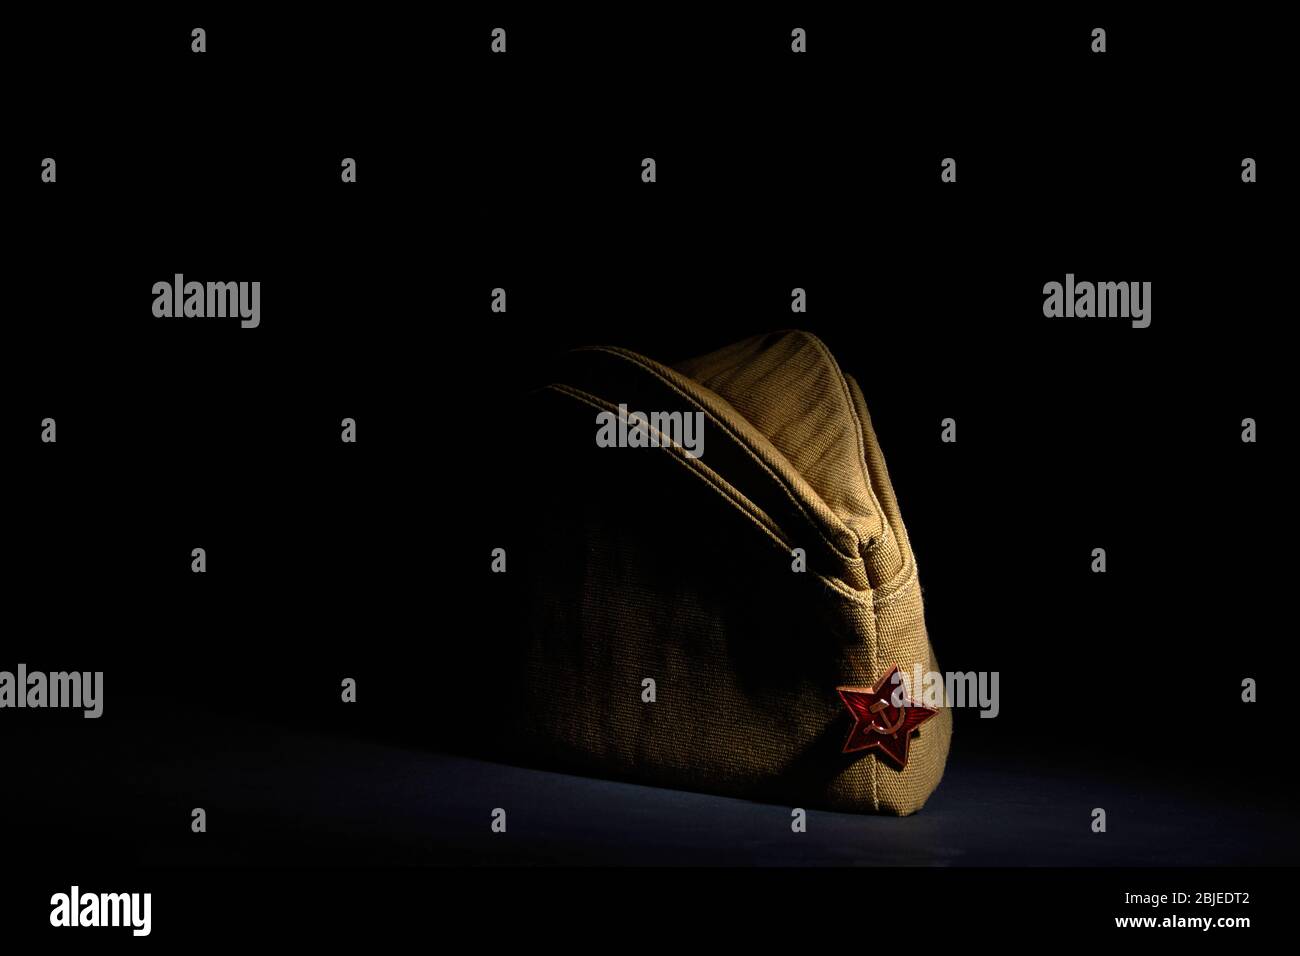 Red Army Cap Banque d'image et photos - Alamy